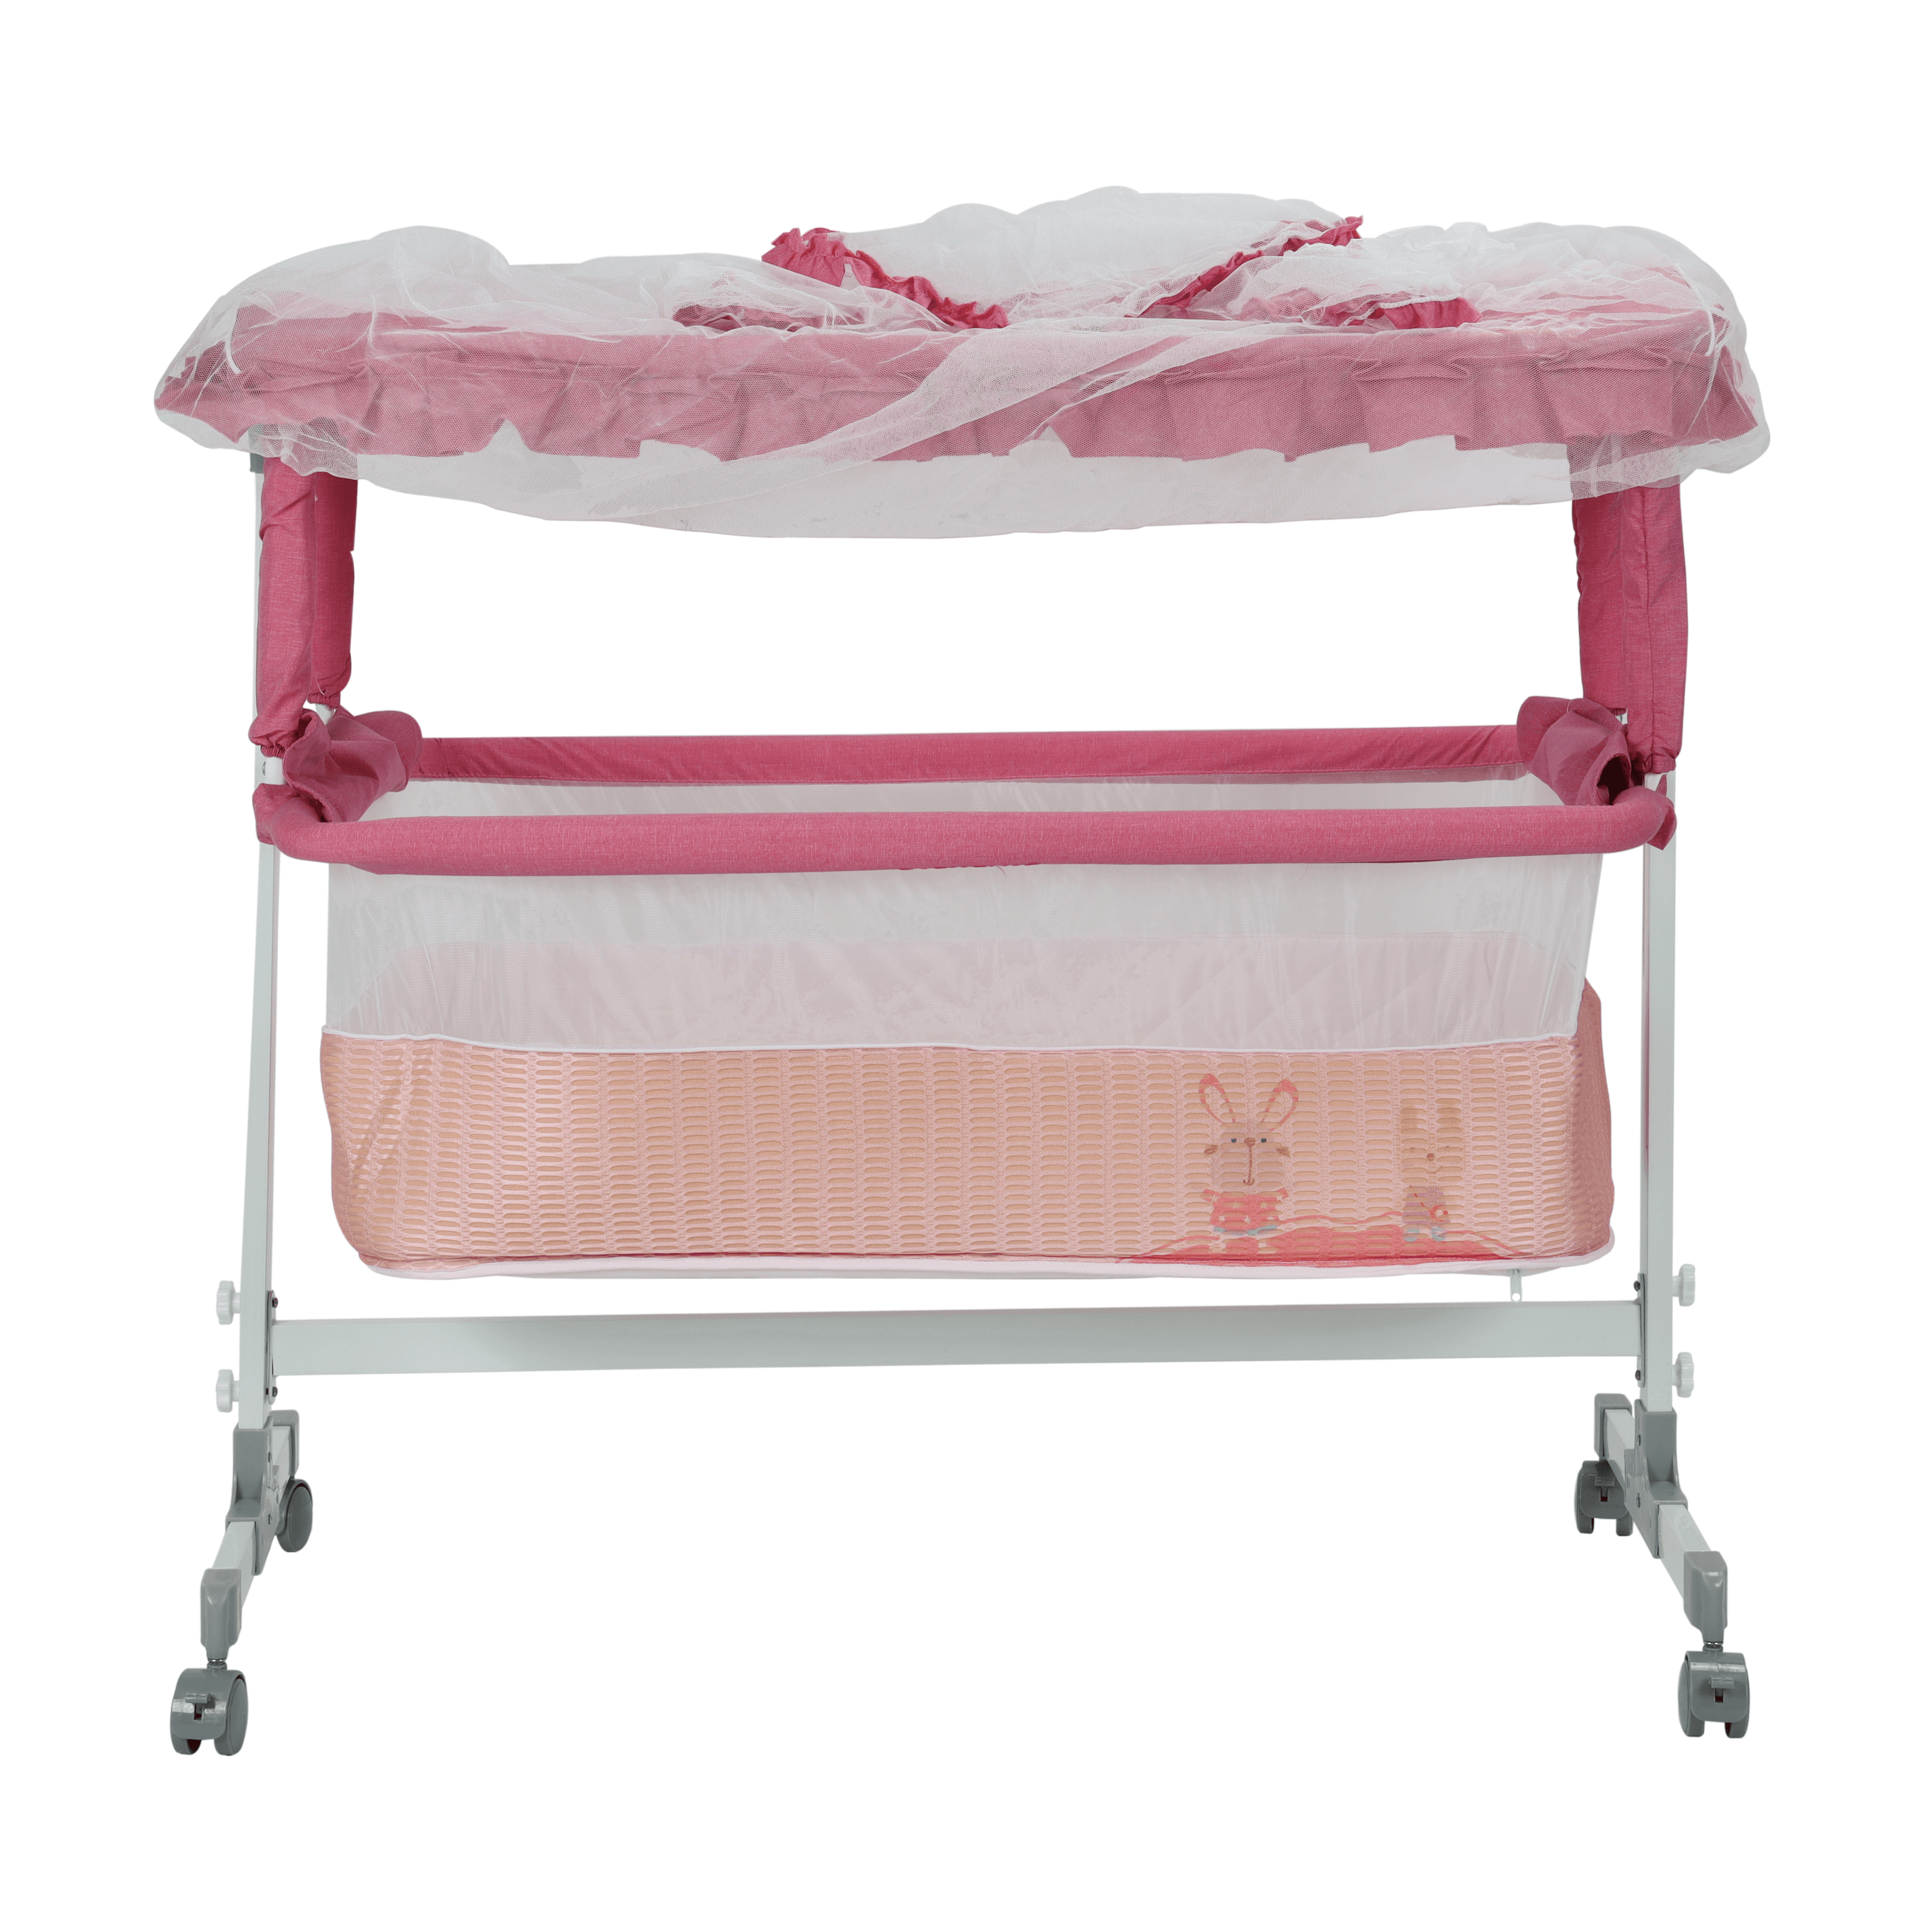 سرير للأطفال هزاز مع ناموسية زهري Baby Cradle - Baby Plus